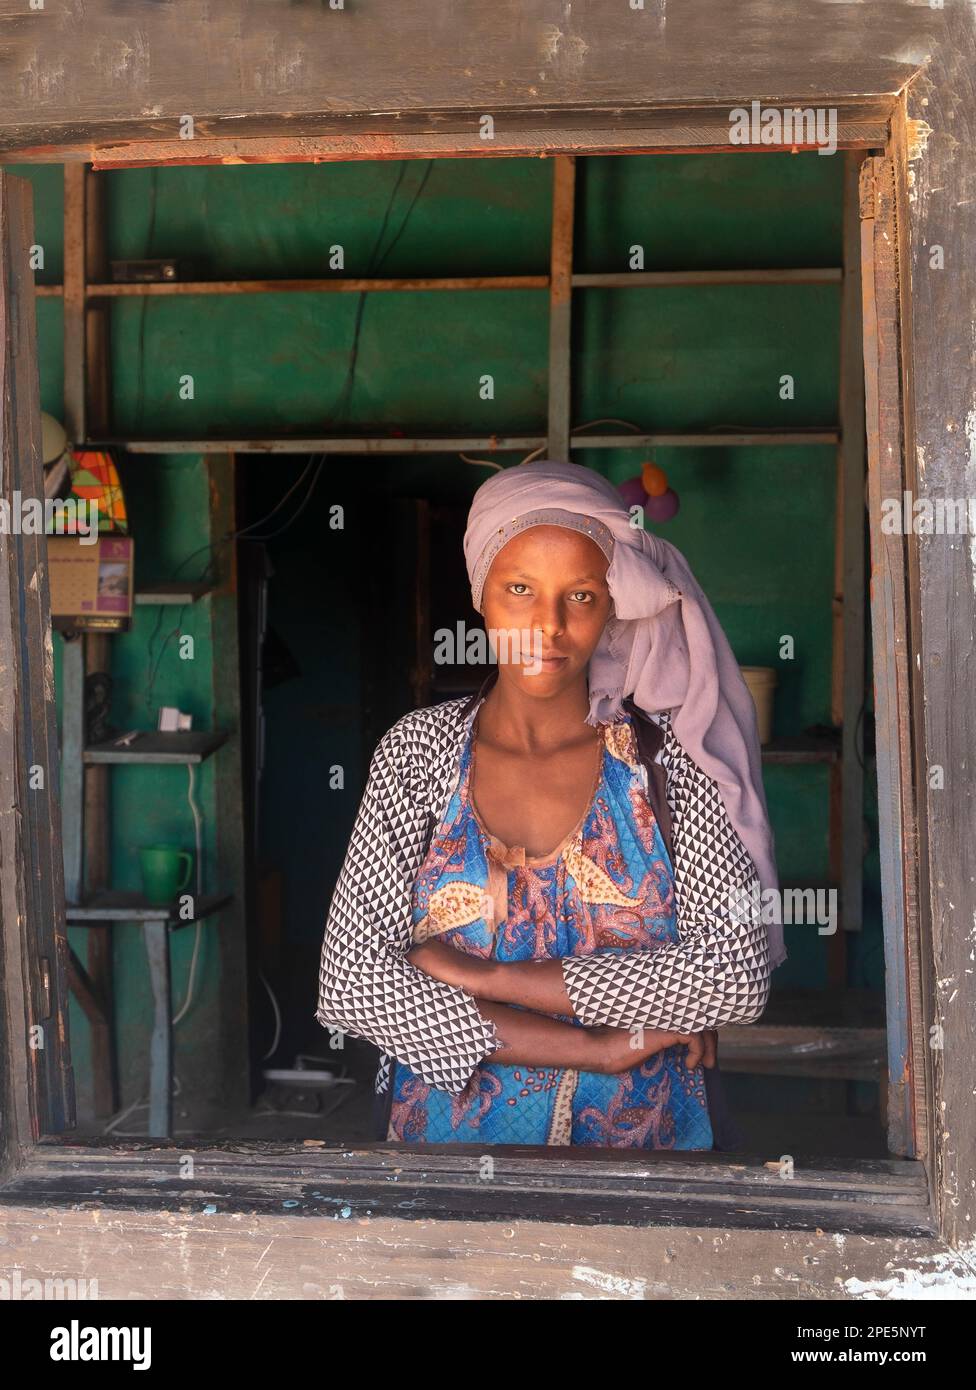 Portrait d'une femme éthiopienne dans des vêtements traditionnels derrière une fenêtre regardant l'appareil photo. Photos de la vie quotidienne. Harar est de l'Éthiopie Banque D'Images